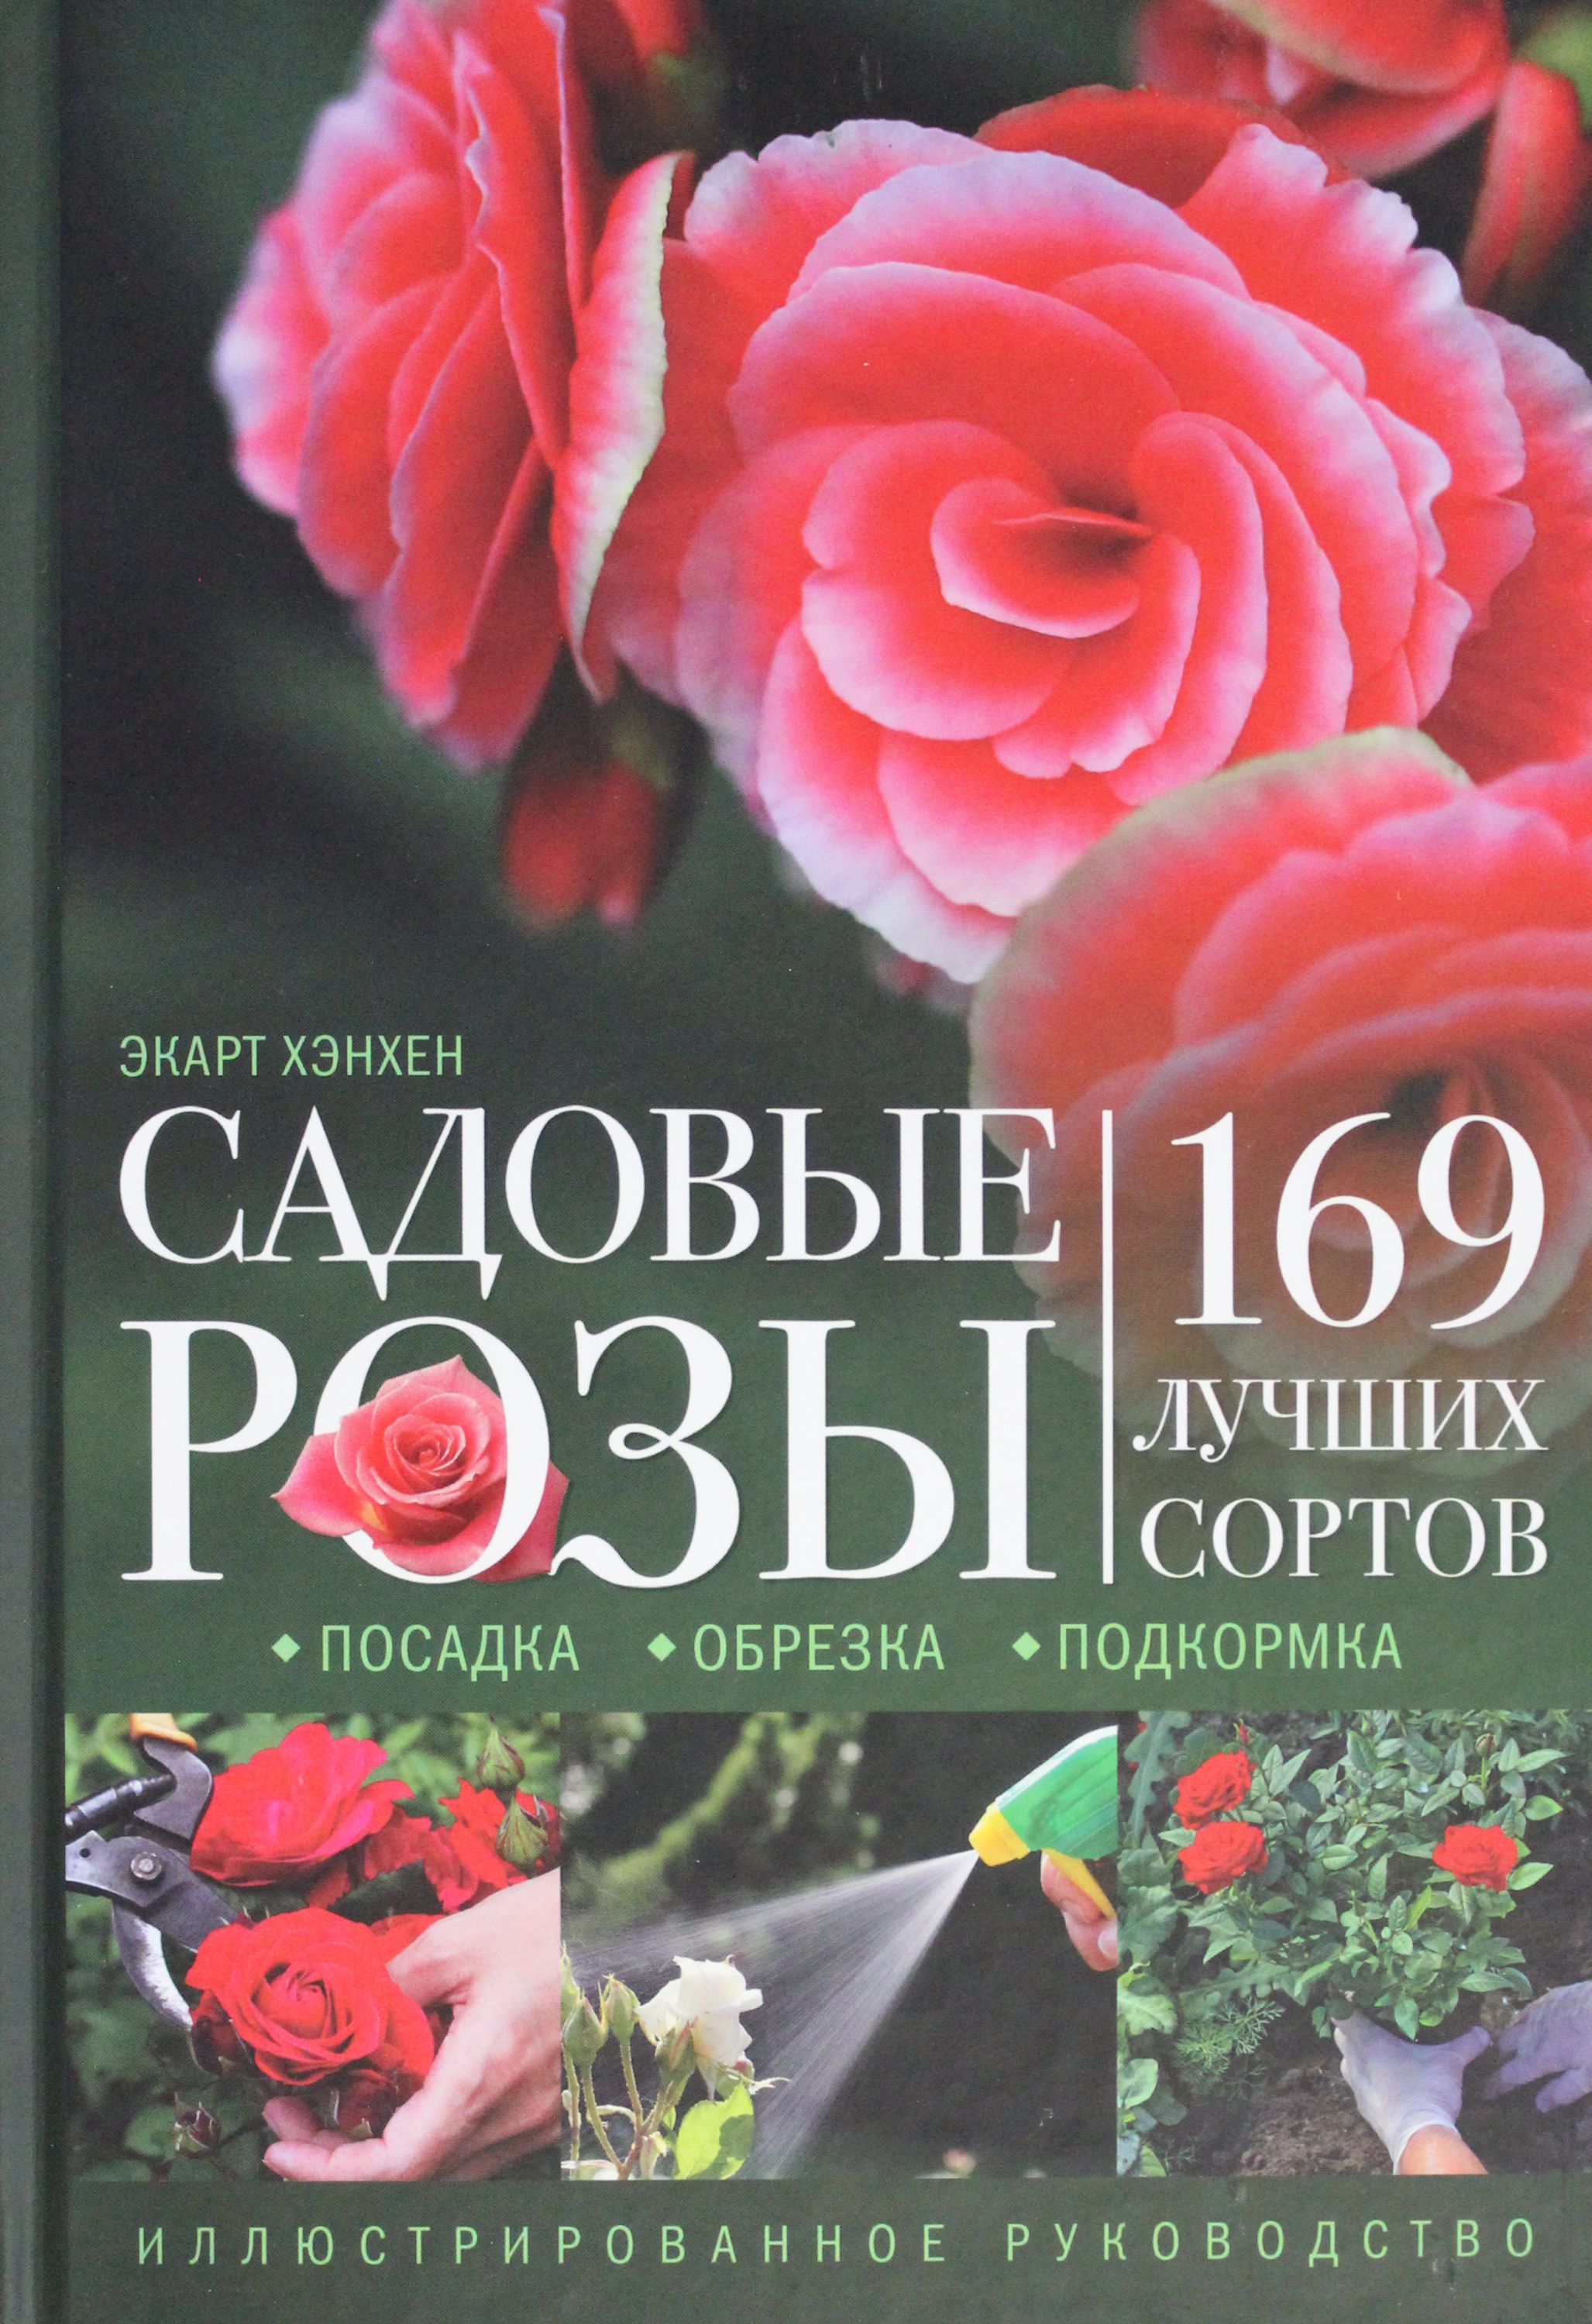 Садовые розы Посадка Обрезка Подкормка 169 лучших сортов